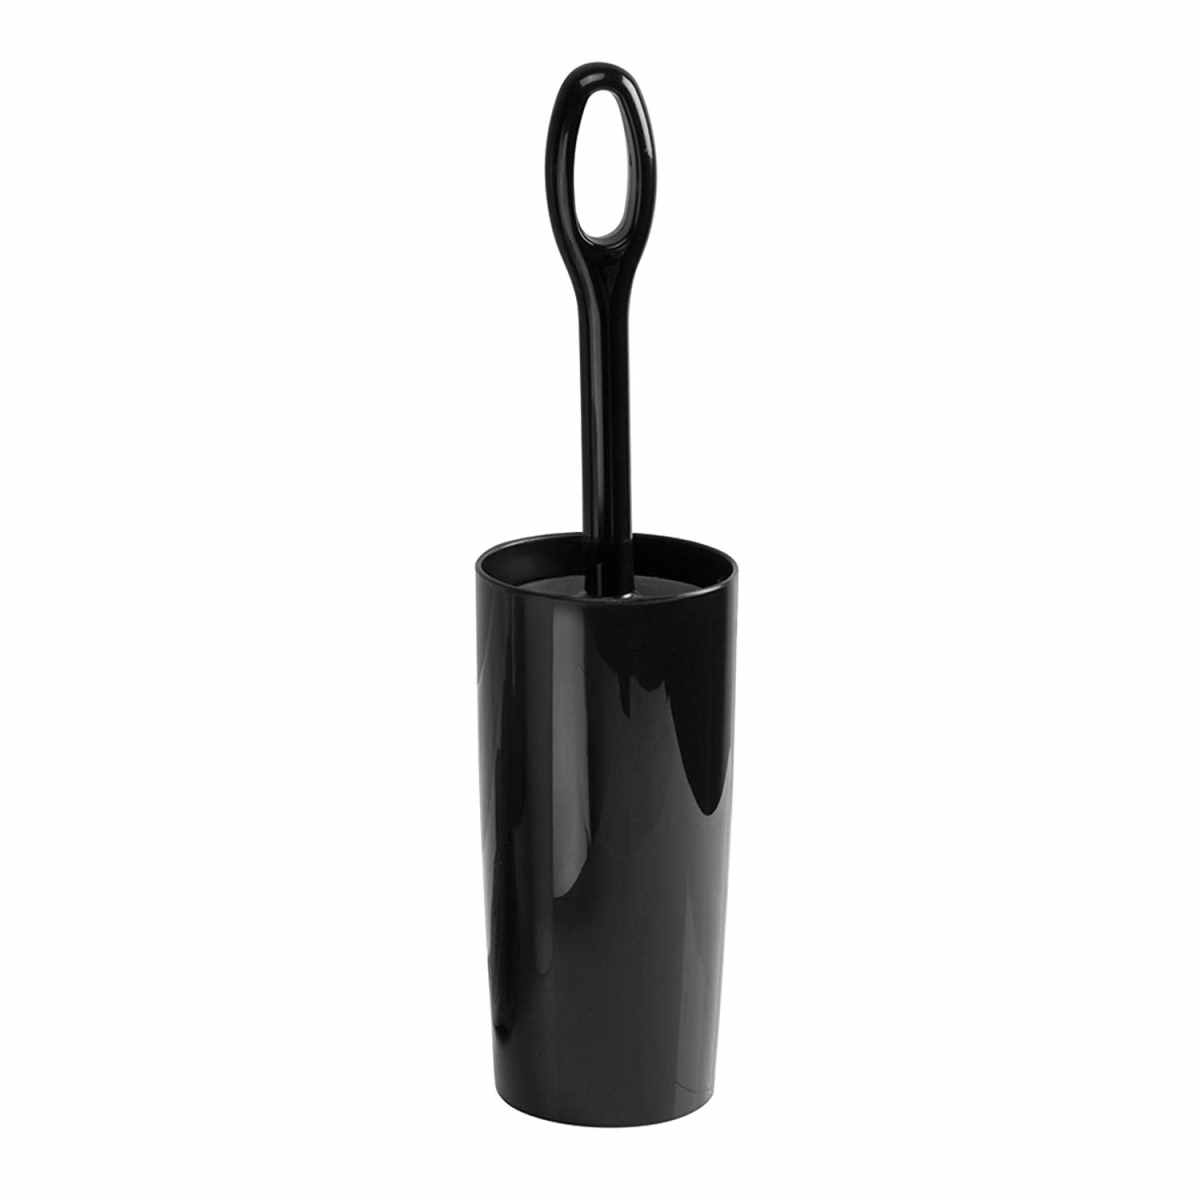 15.7 X 3.9 In. Moda Toilet Bowl Brush & Holder - Black, Pack Of 4